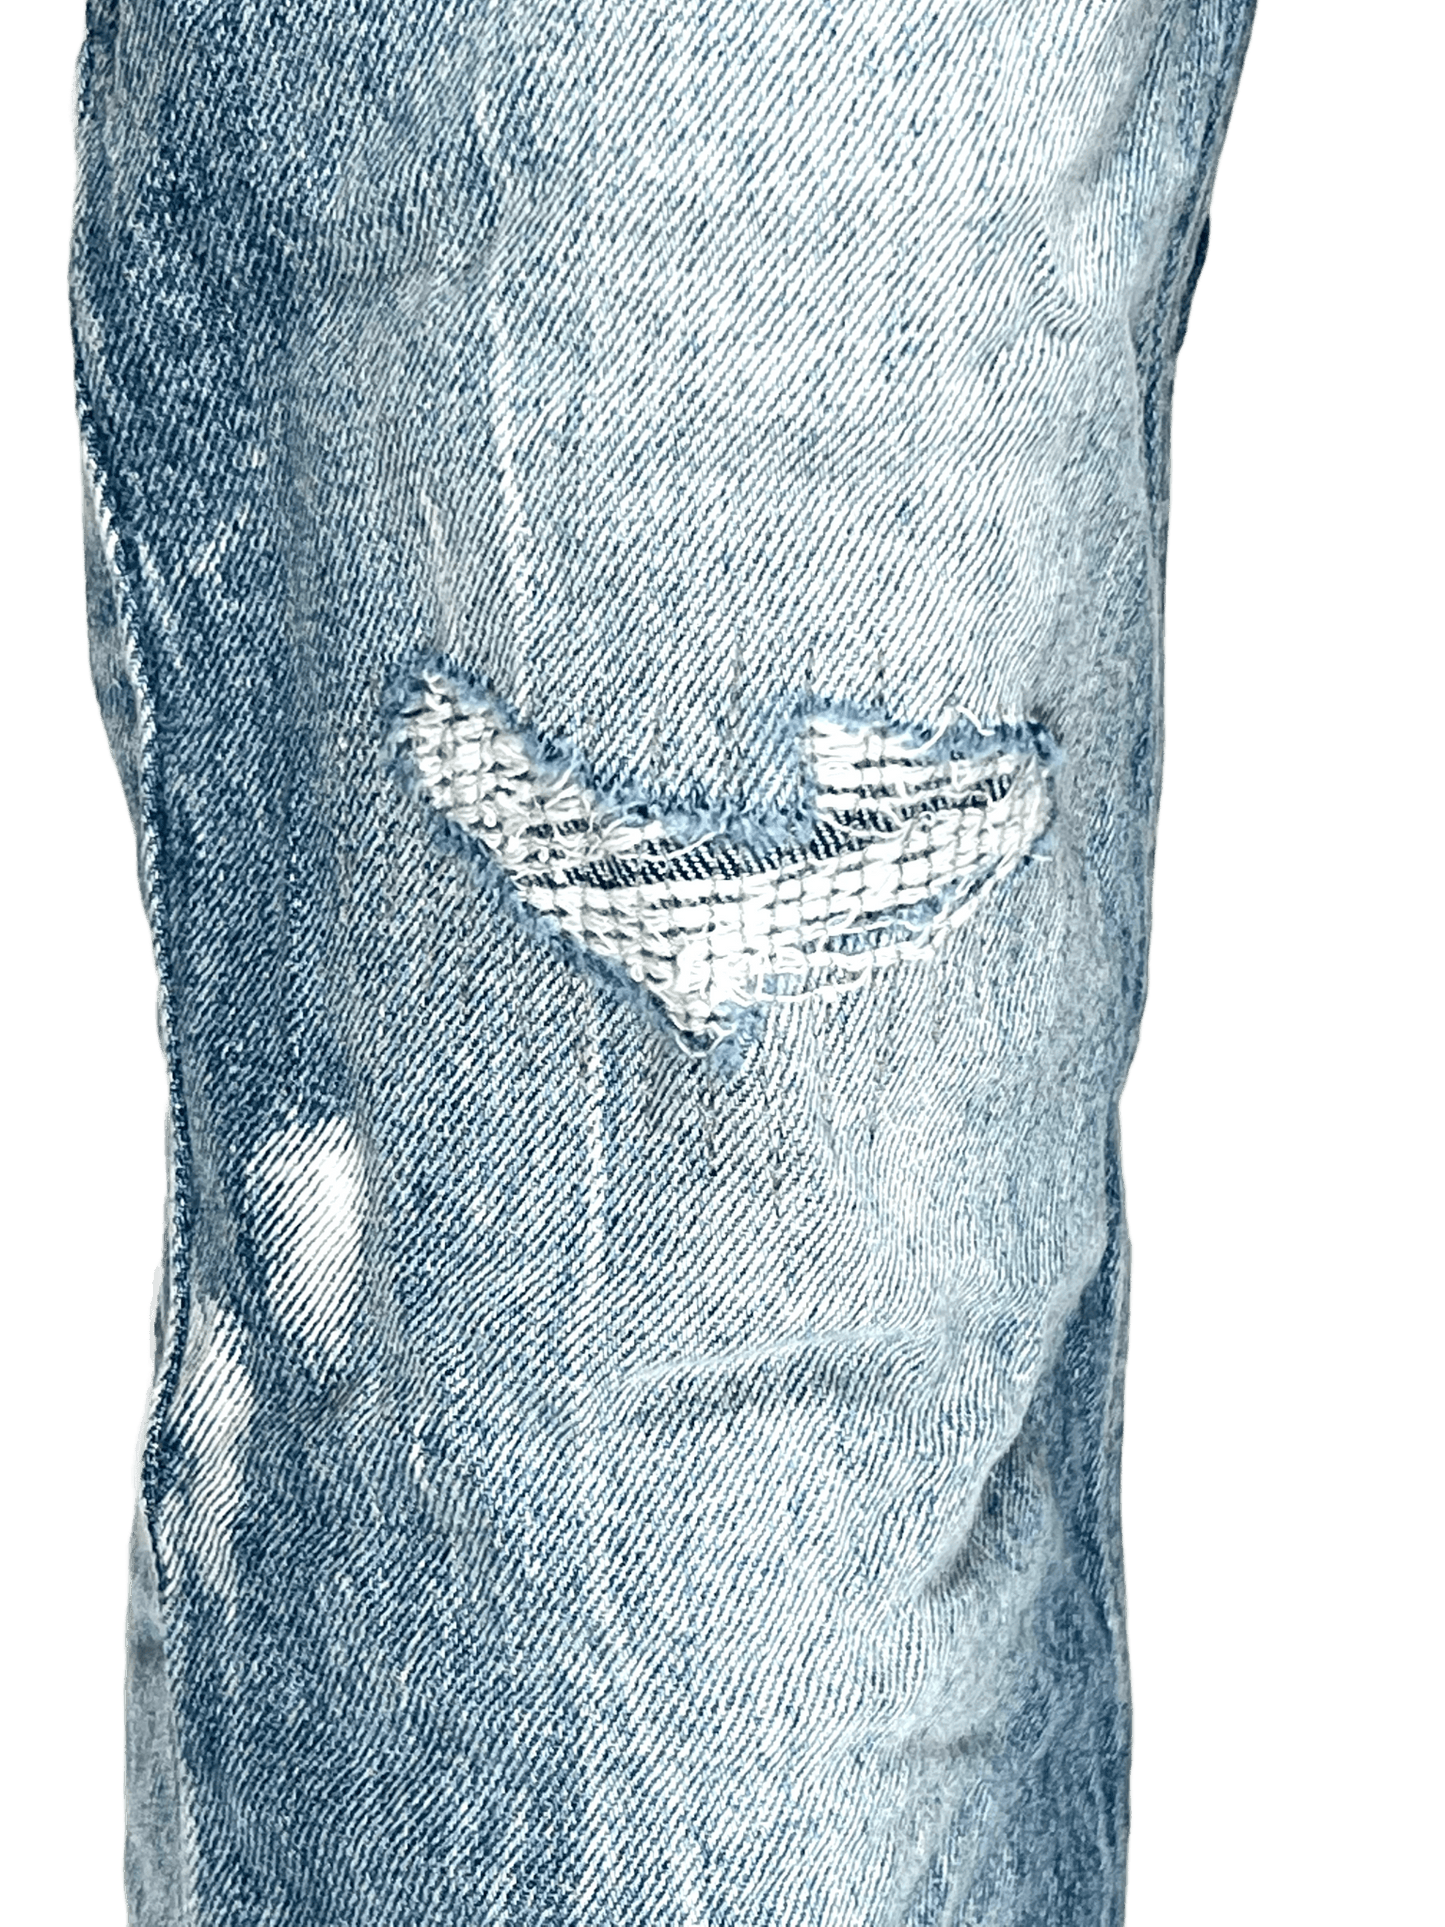 A pair of KSUBI VAN WINKLE HIGHFLY DENIM jeans with holes in them.